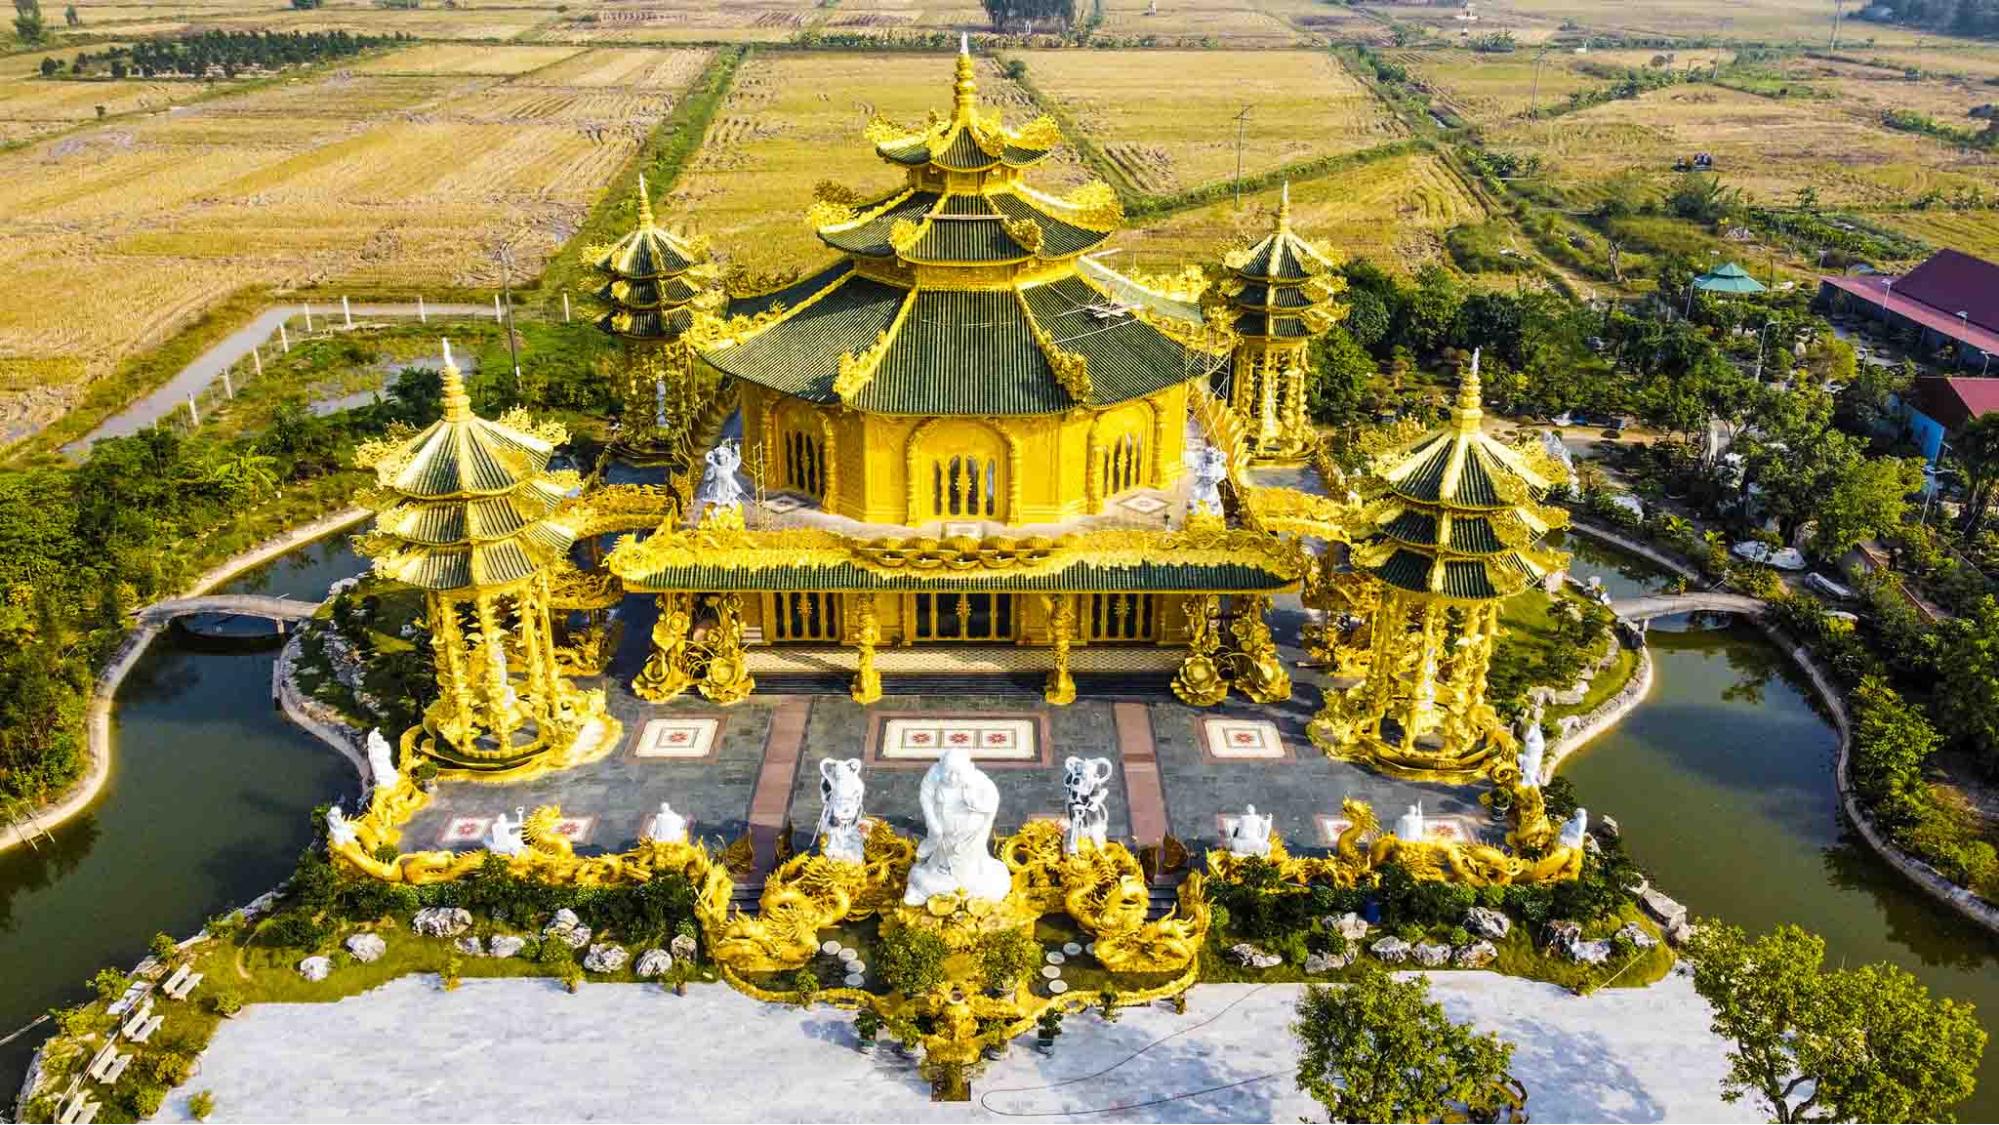 # Khám phá ngôi Chùa dát vàng ở hưng yên – “Thái Lan thu nhỏ”